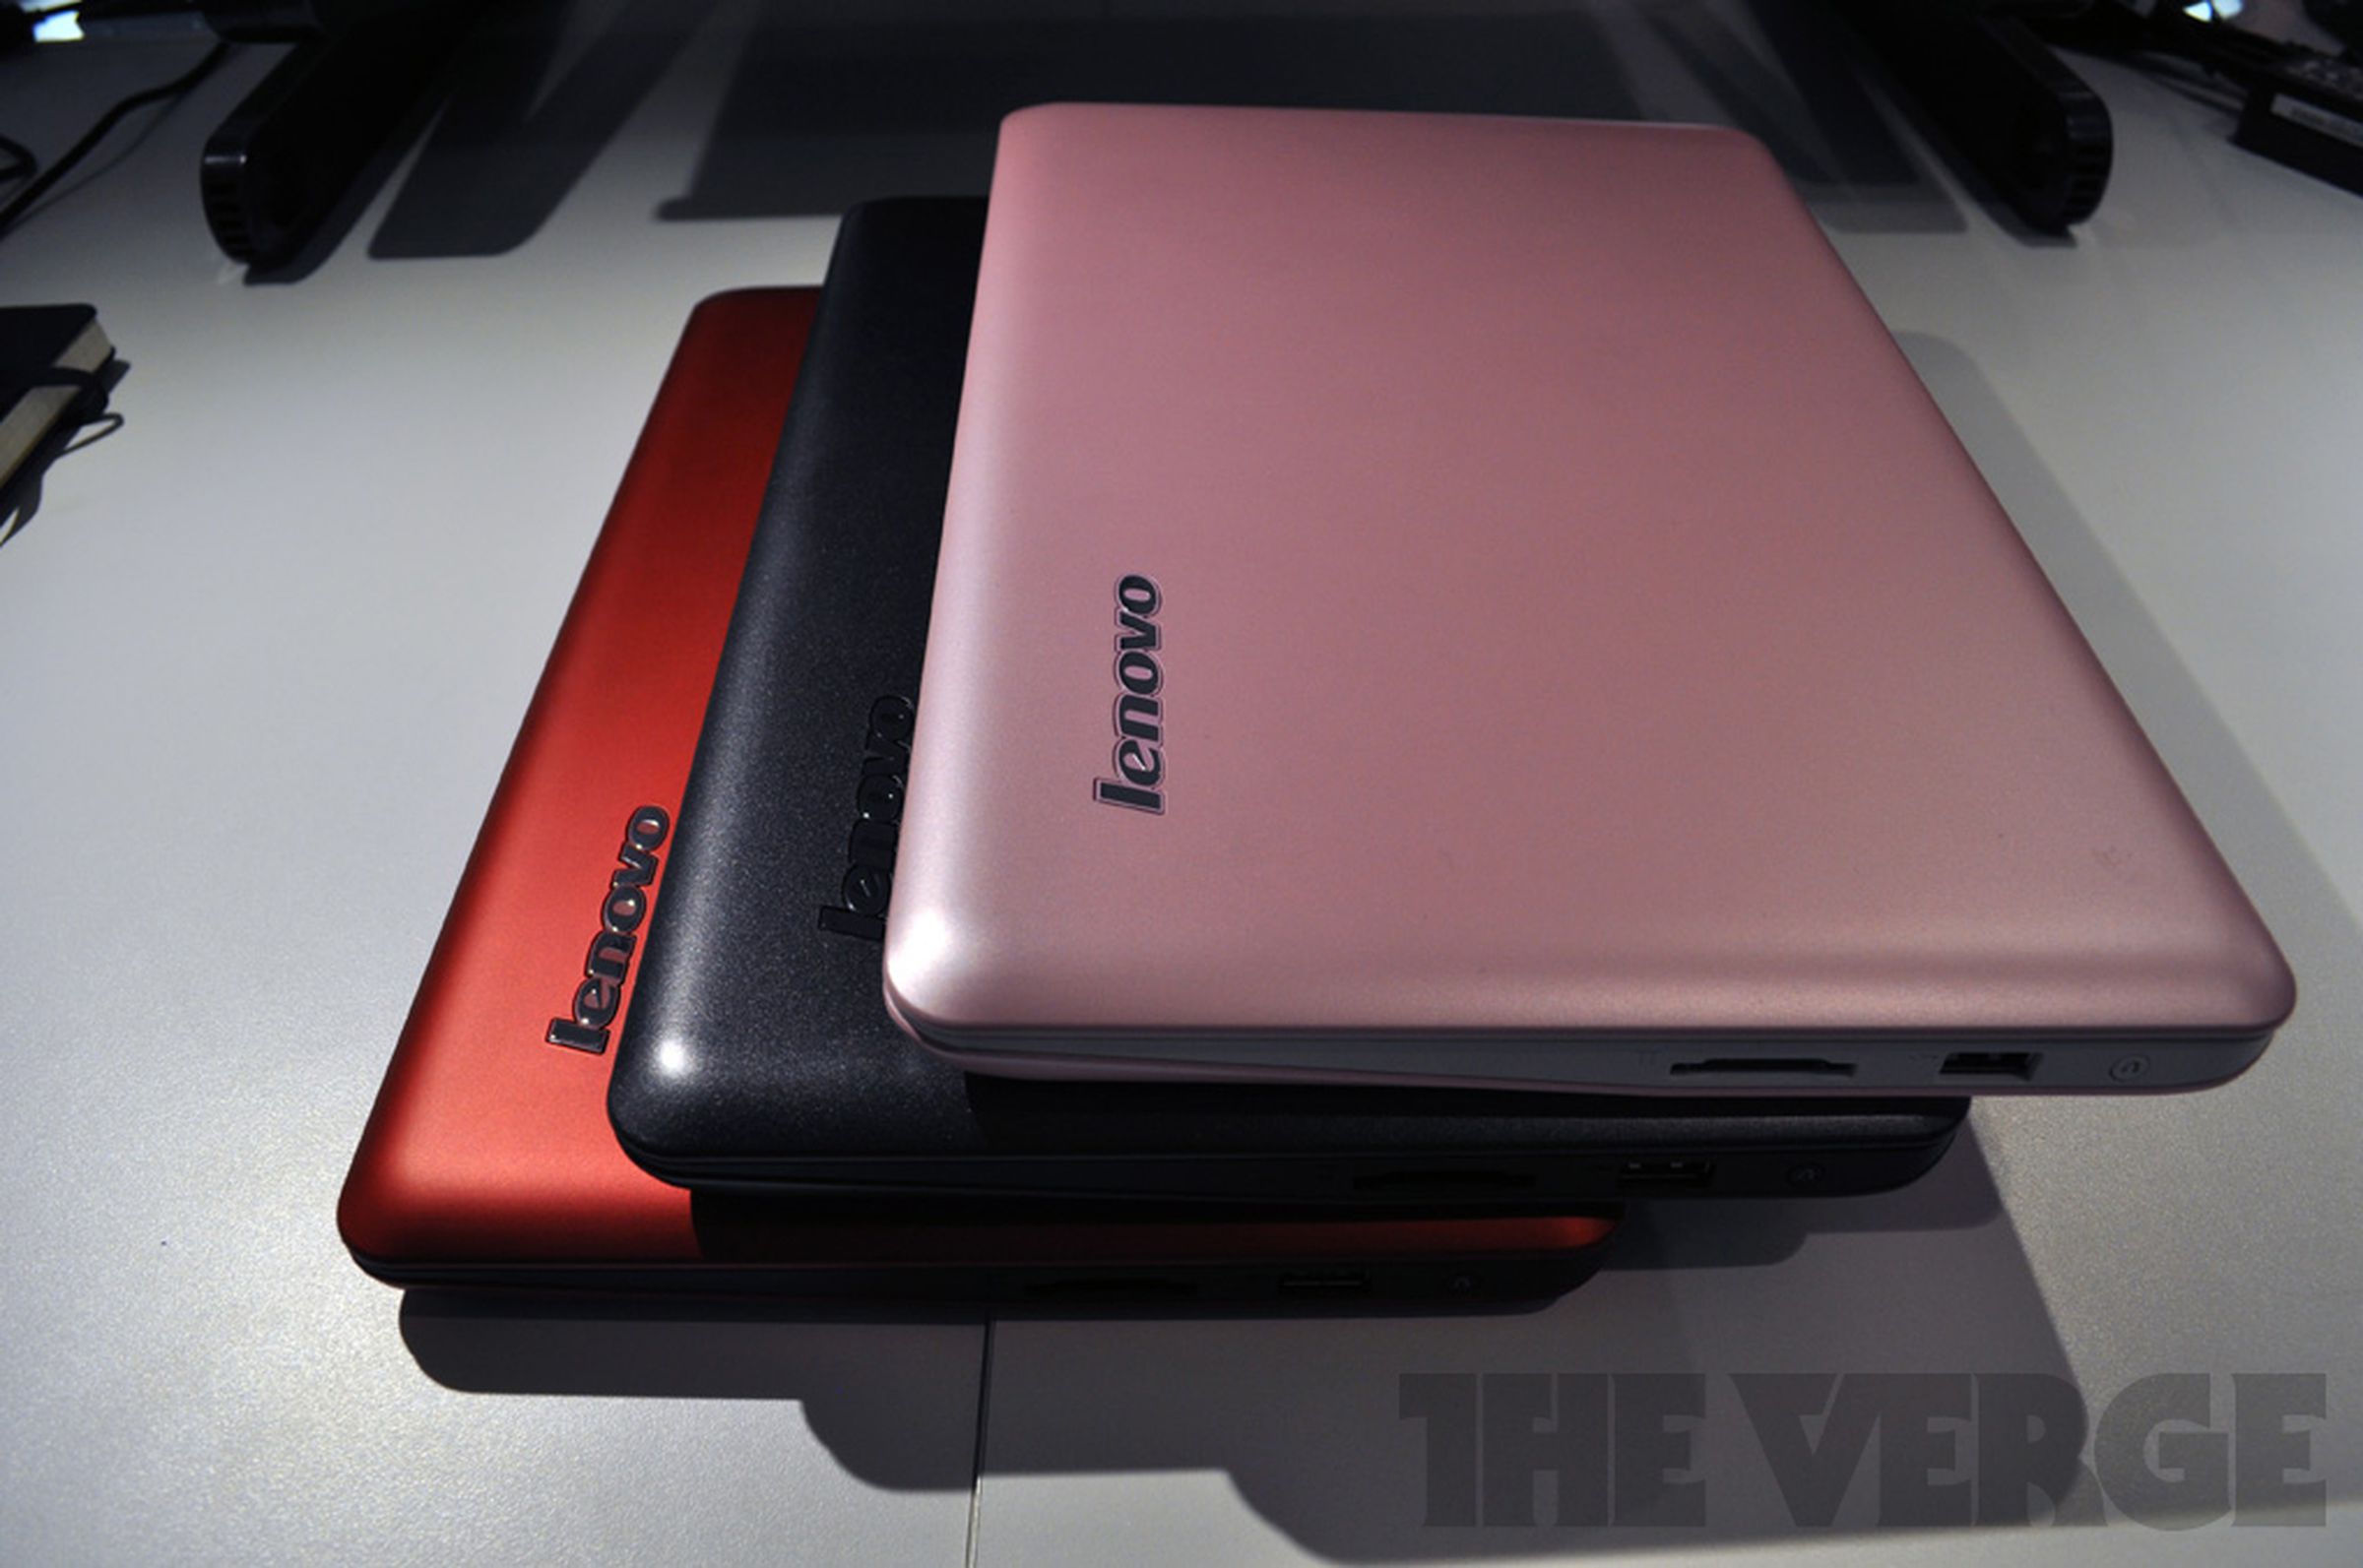 Lenovo IdeaPad S200 hands-on